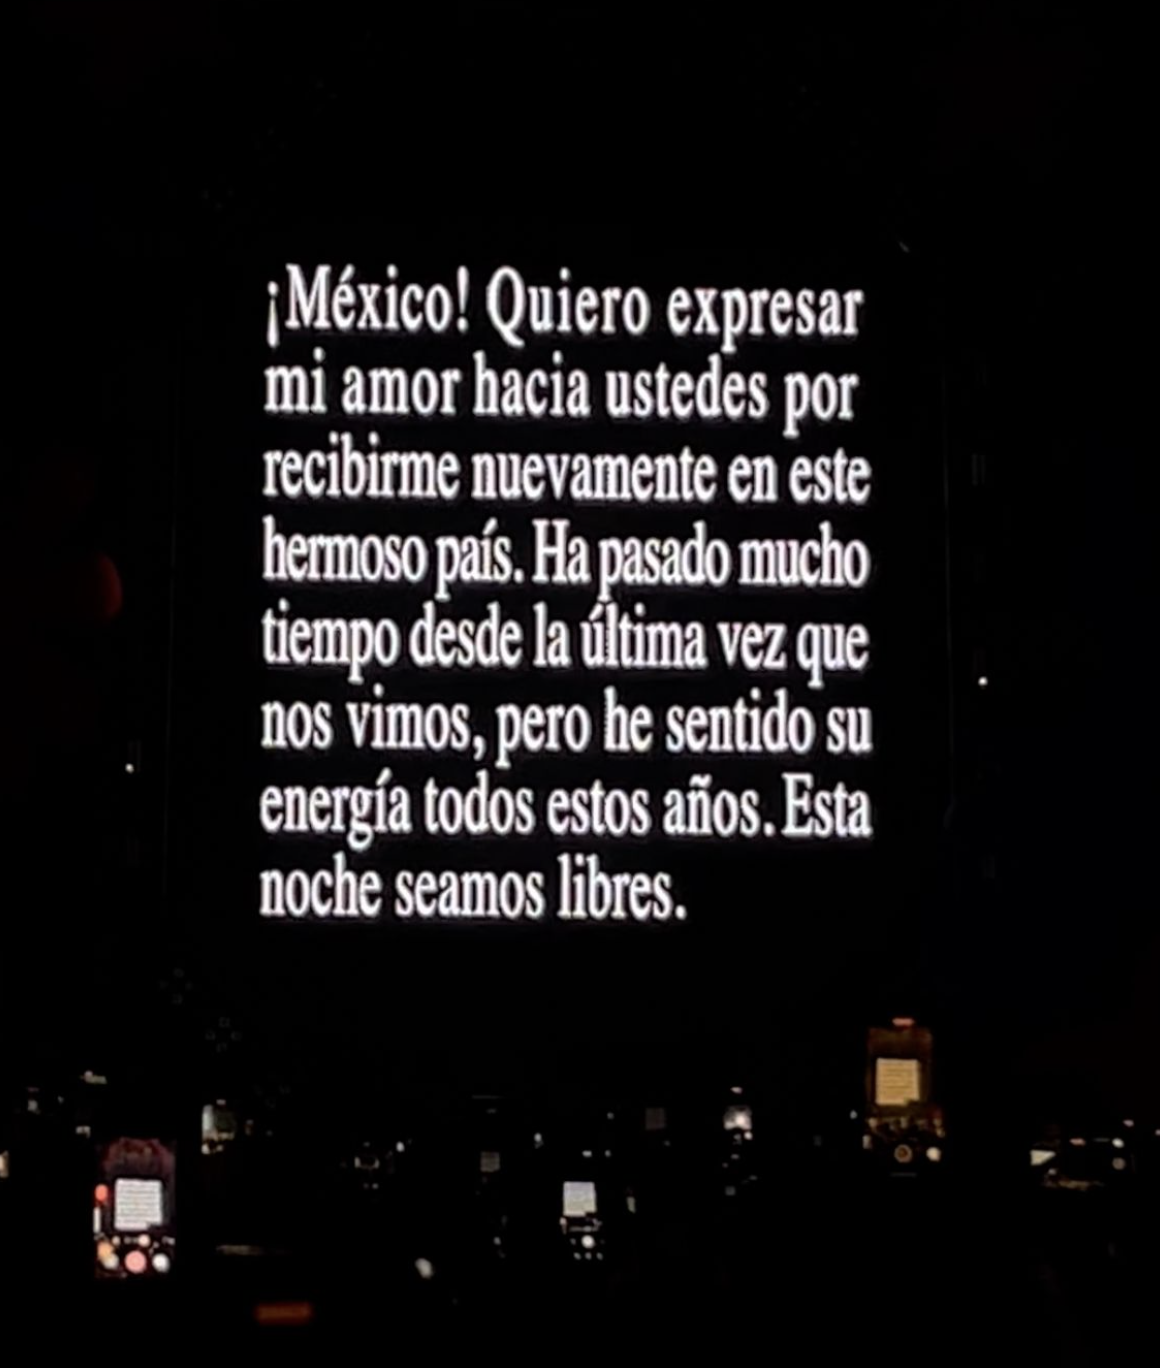 Mensaje en pantalla durante concierto expresando amor y gratitud hacia México y deseos de libertad en la noche